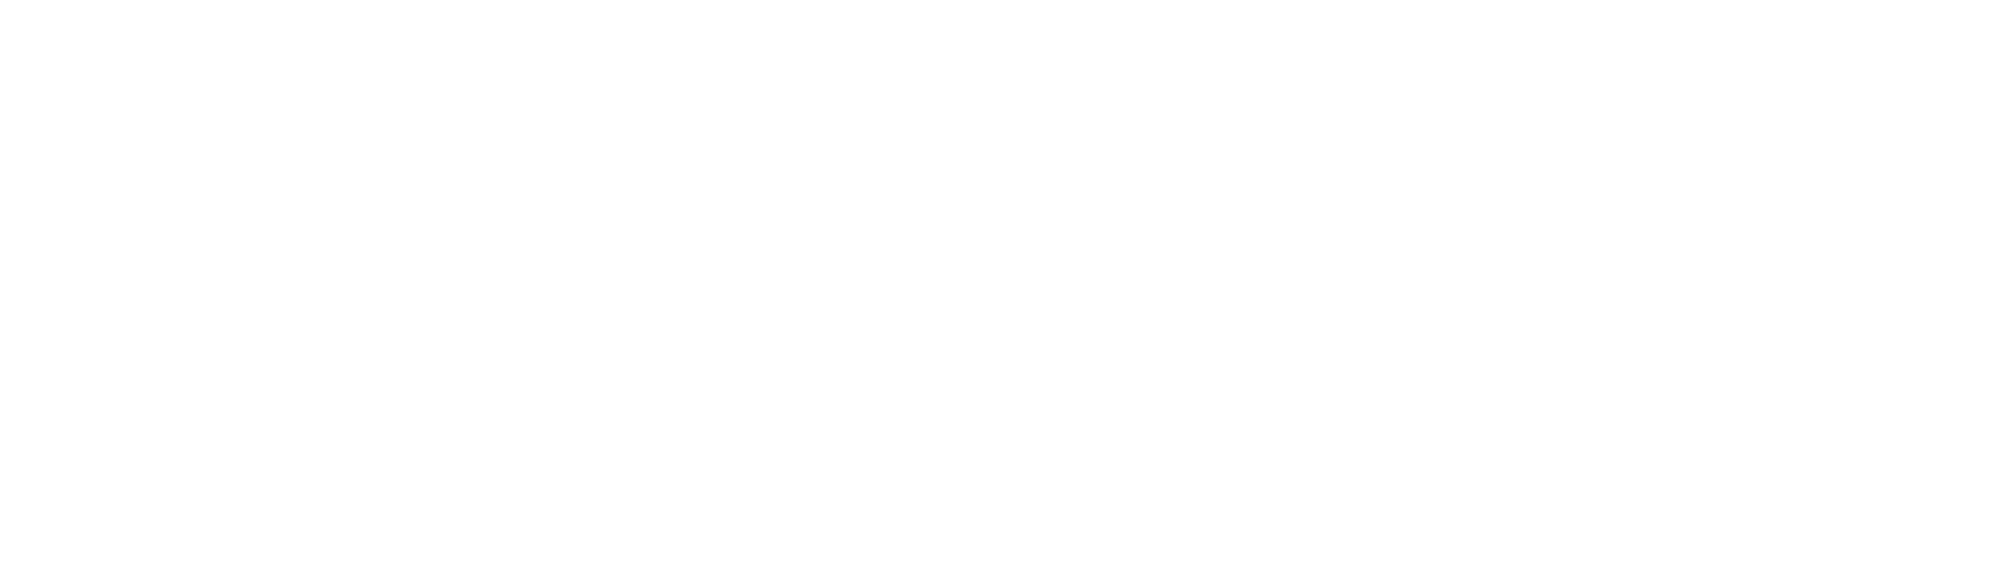 Aktuelles JKweb Logo. Zu sehen ist ein kreisrundes Logo. Oben stehen die Worte JKweb, unten steht Service und in der Mitte steht Die Webmanufaktur und in dem Kreis befindet sich als Grafik ein fast geschlossenes Zahnrad.